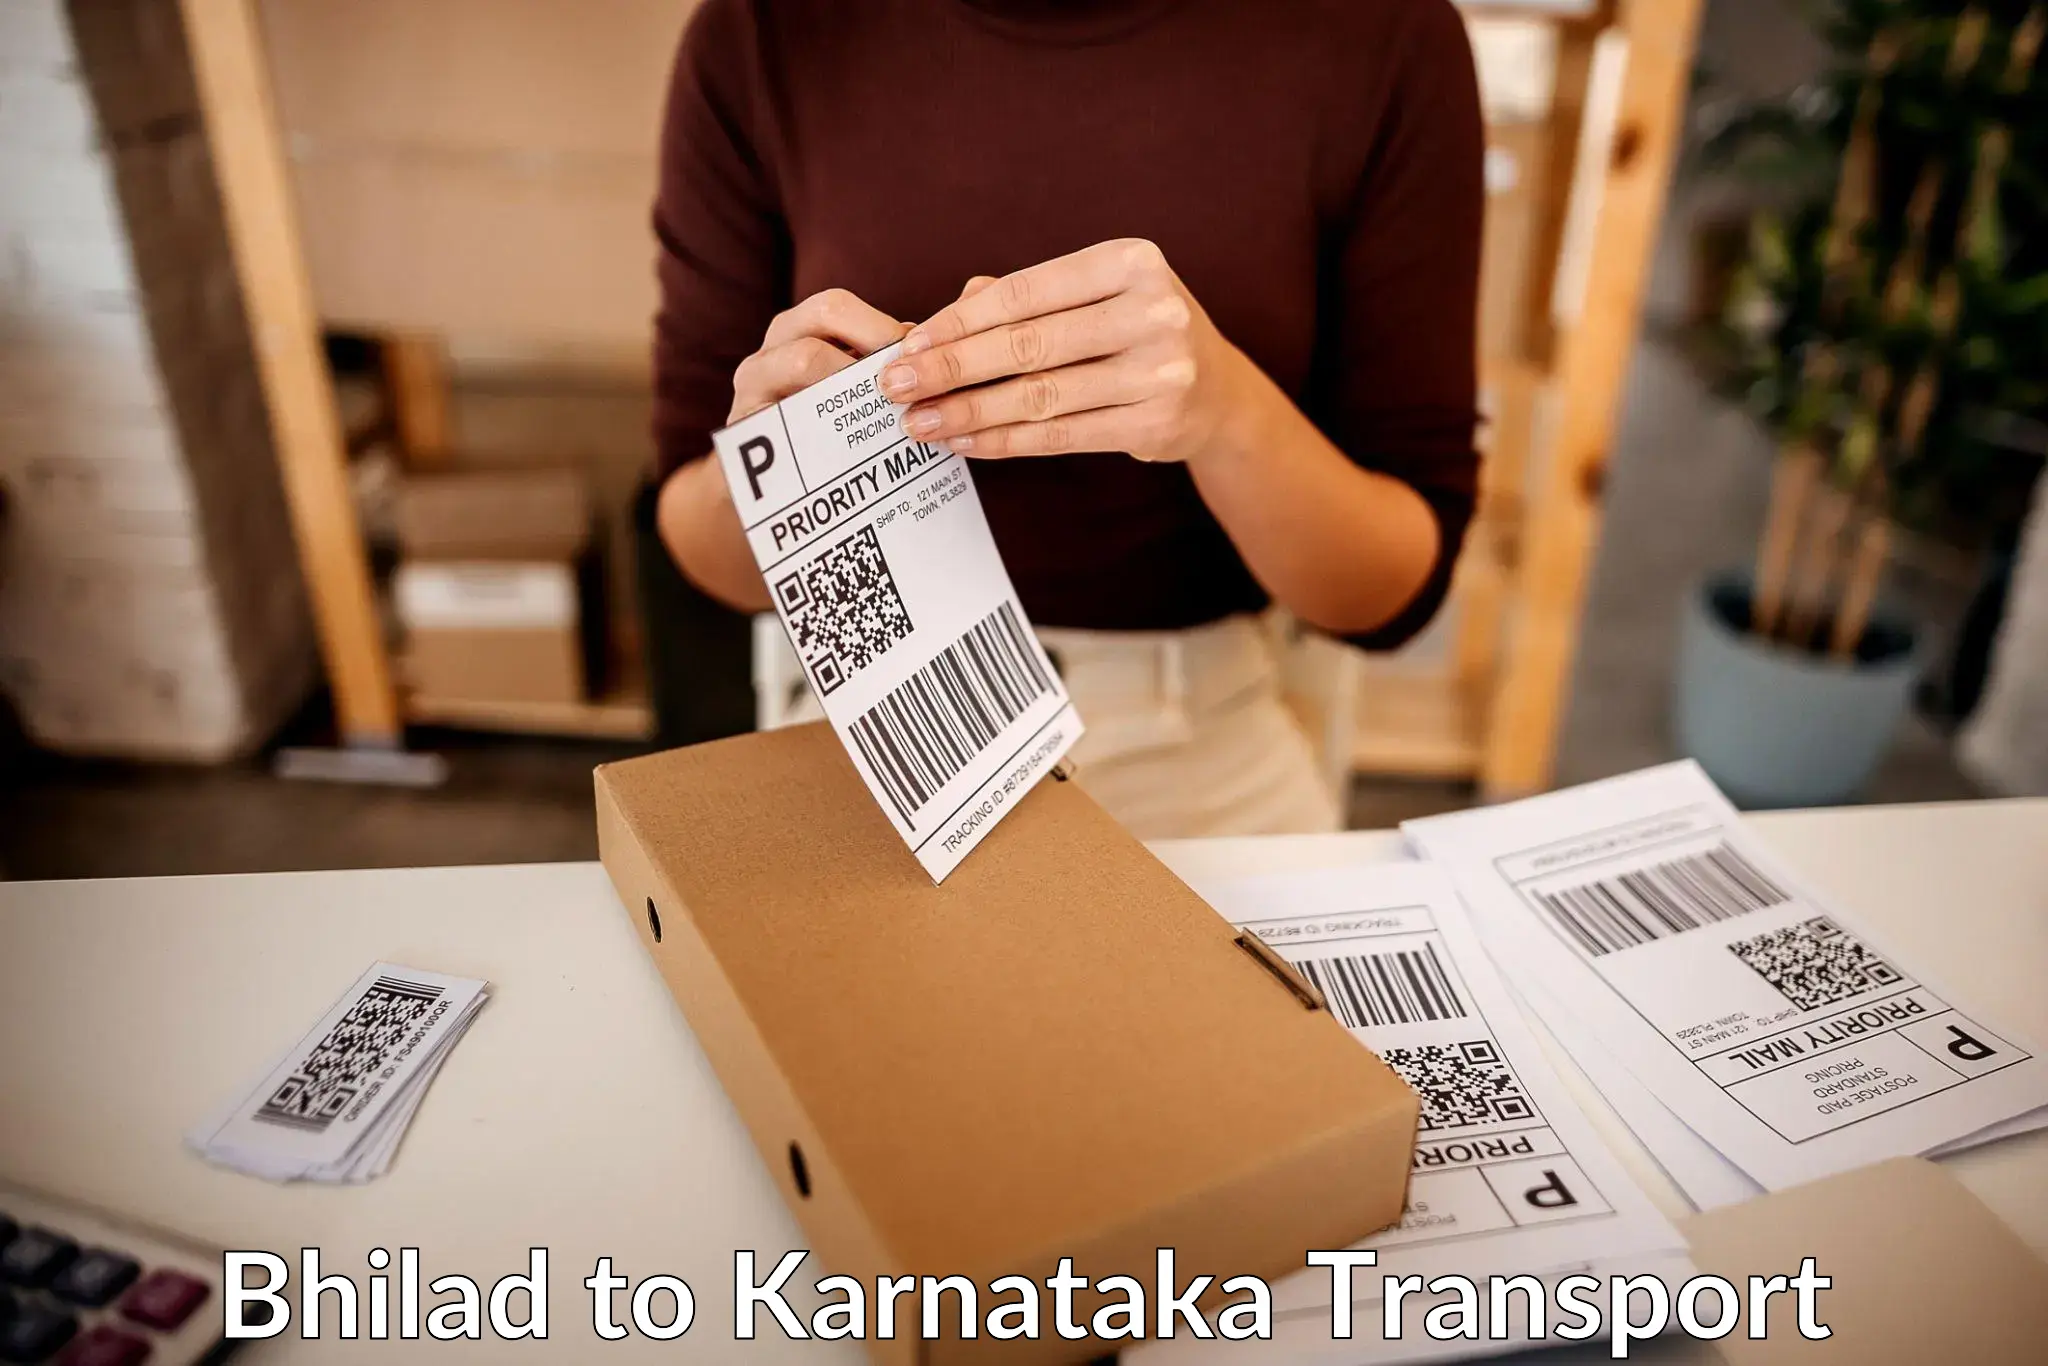 Shipping partner Bhilad to Karnataka